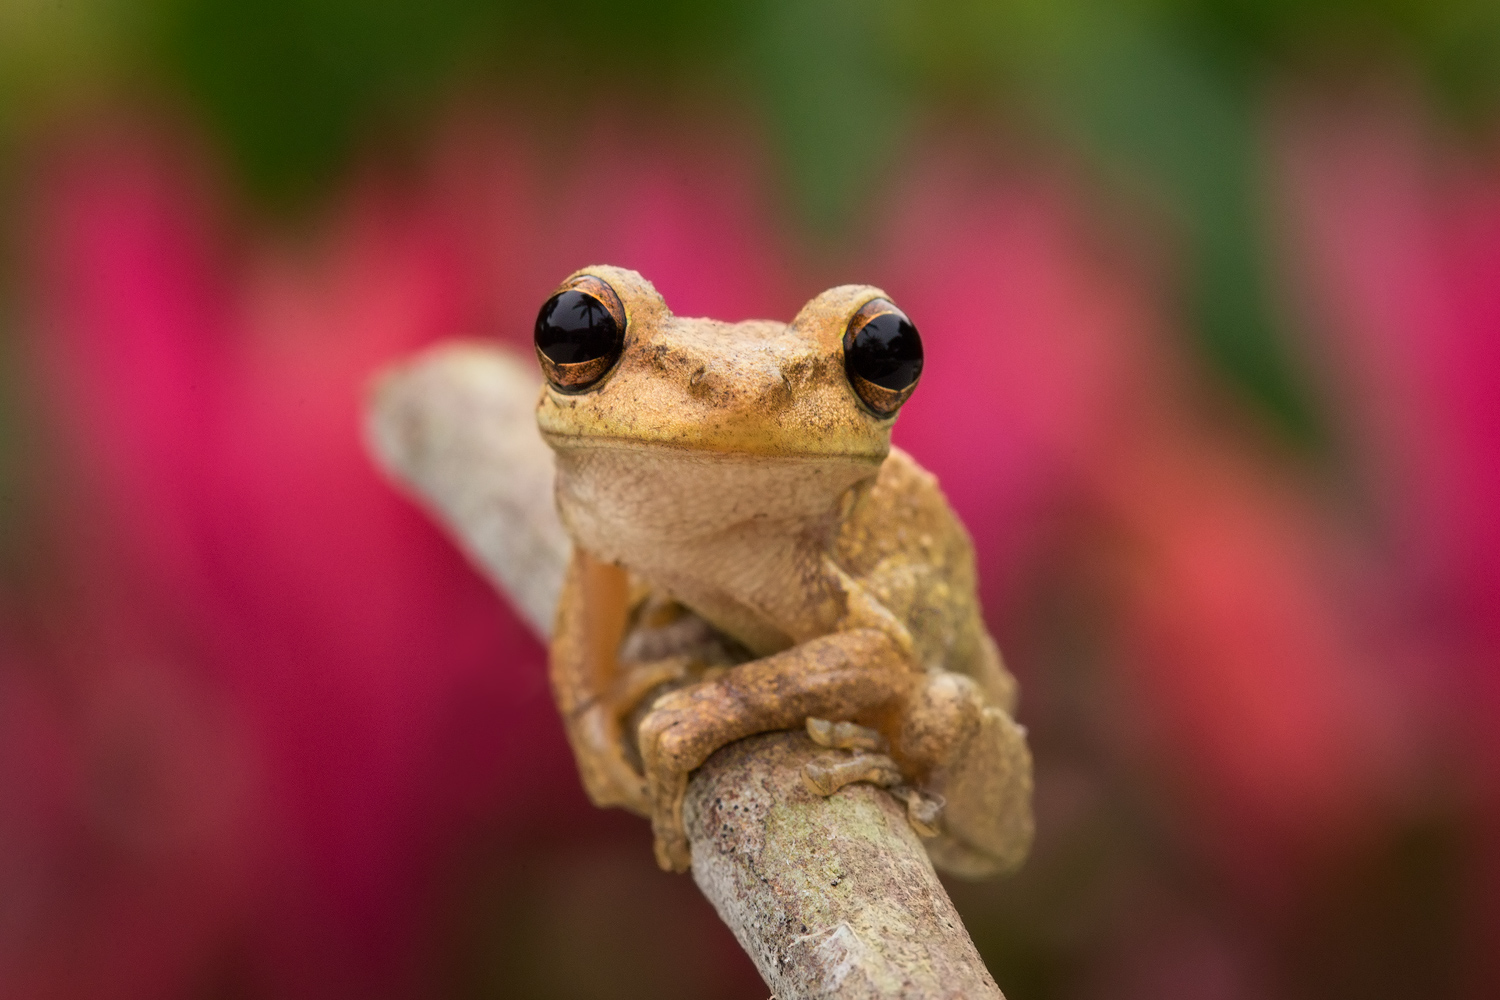 cuban tree frog,Osteopilus septentrionalis, amphibian, frog, tree frog, Patrick Zephyr